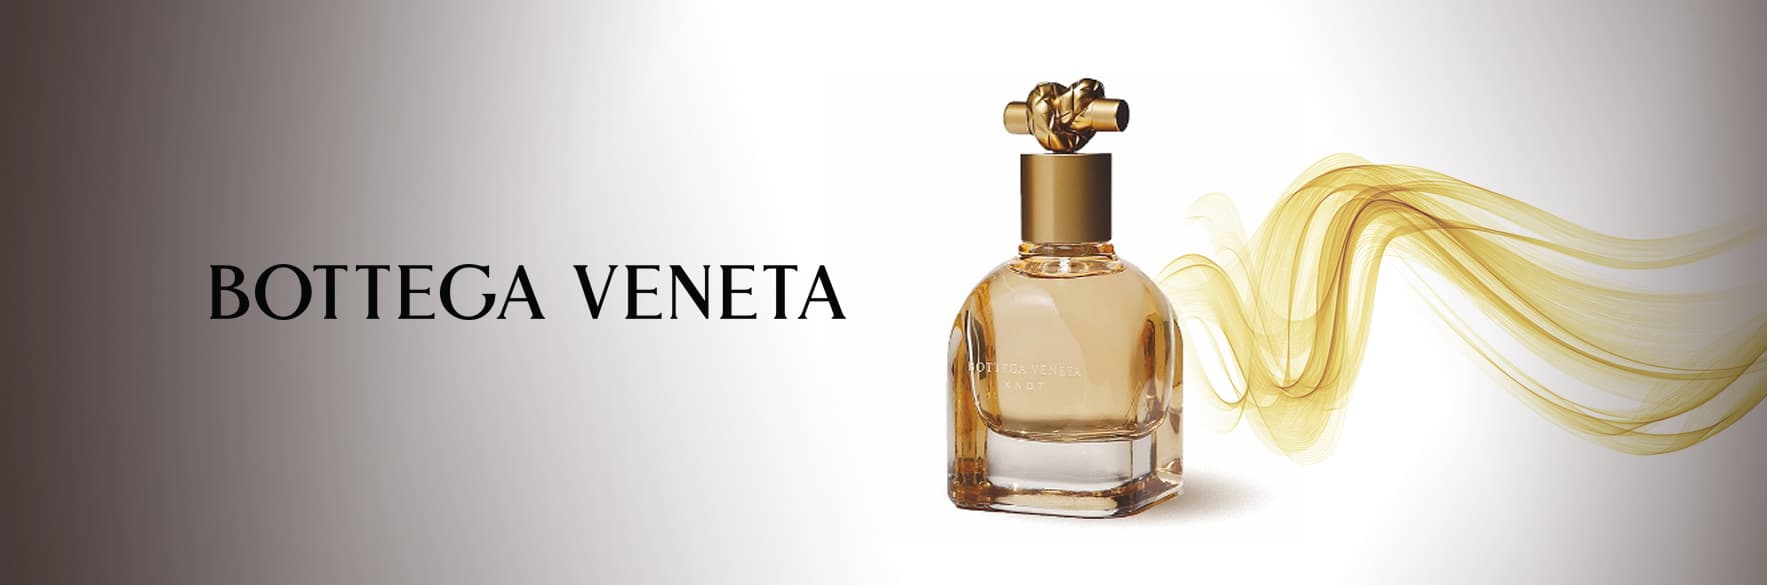 خرید محصولات برند بوتگا ونتا BOTTEGA VENETA ایتالیا